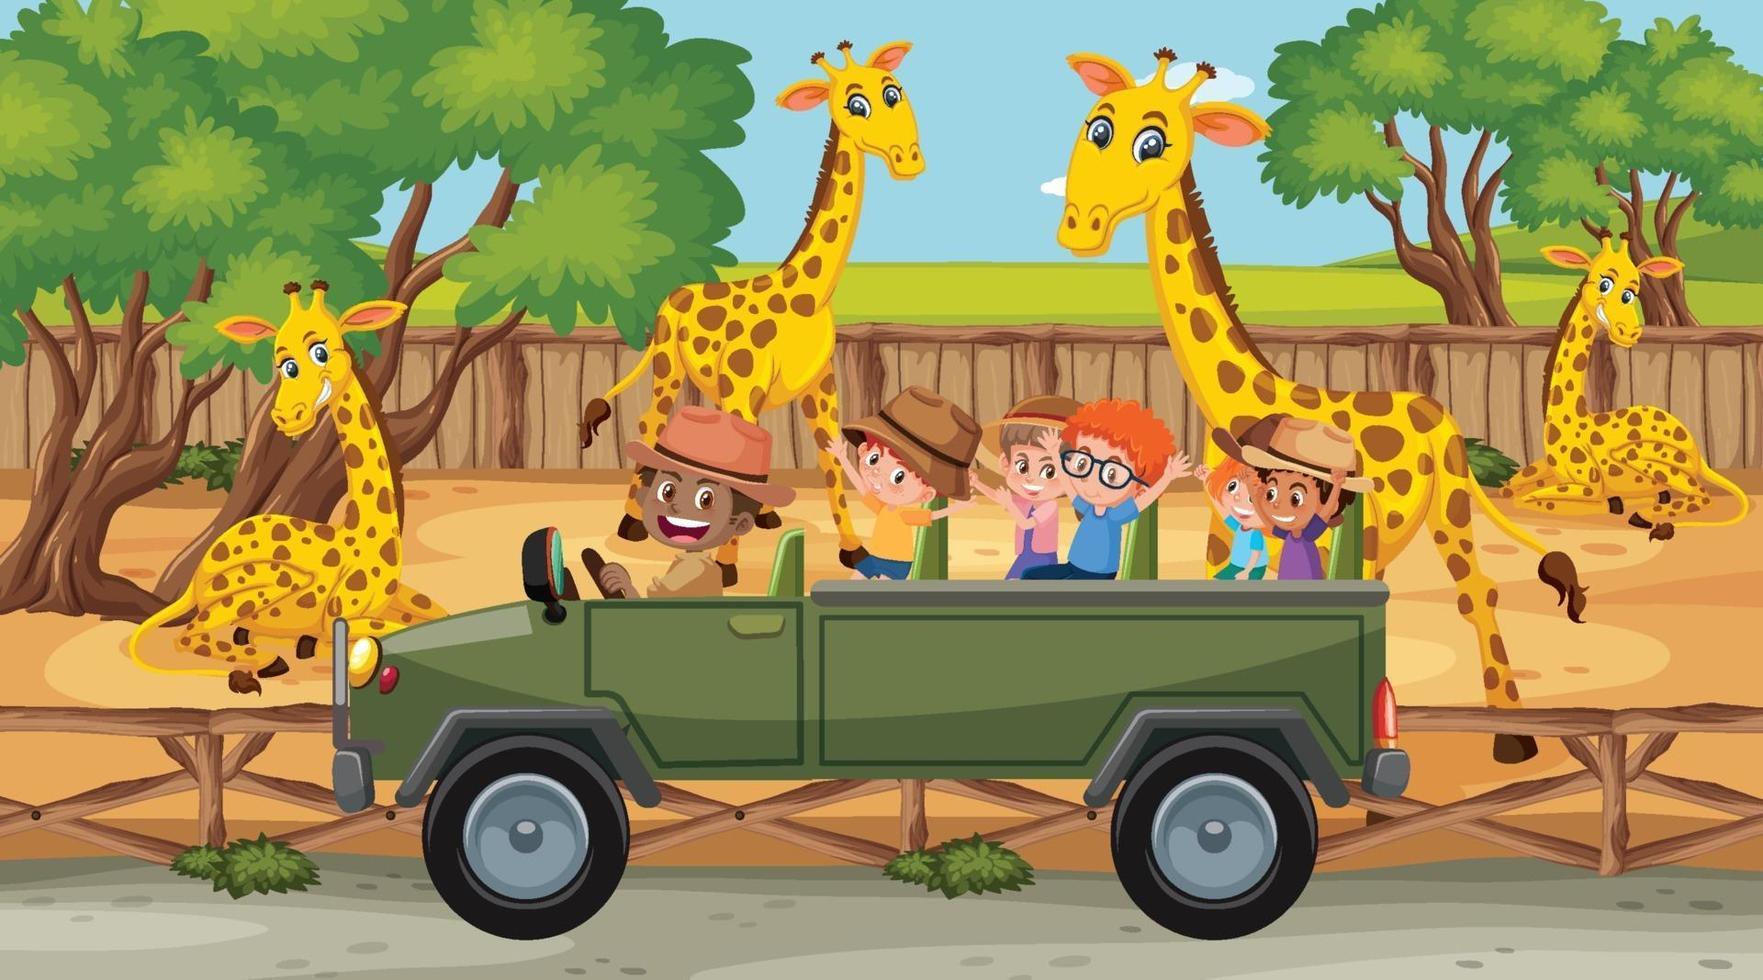 safariscène met veel giraffen en kinderen op toeristenauto vector